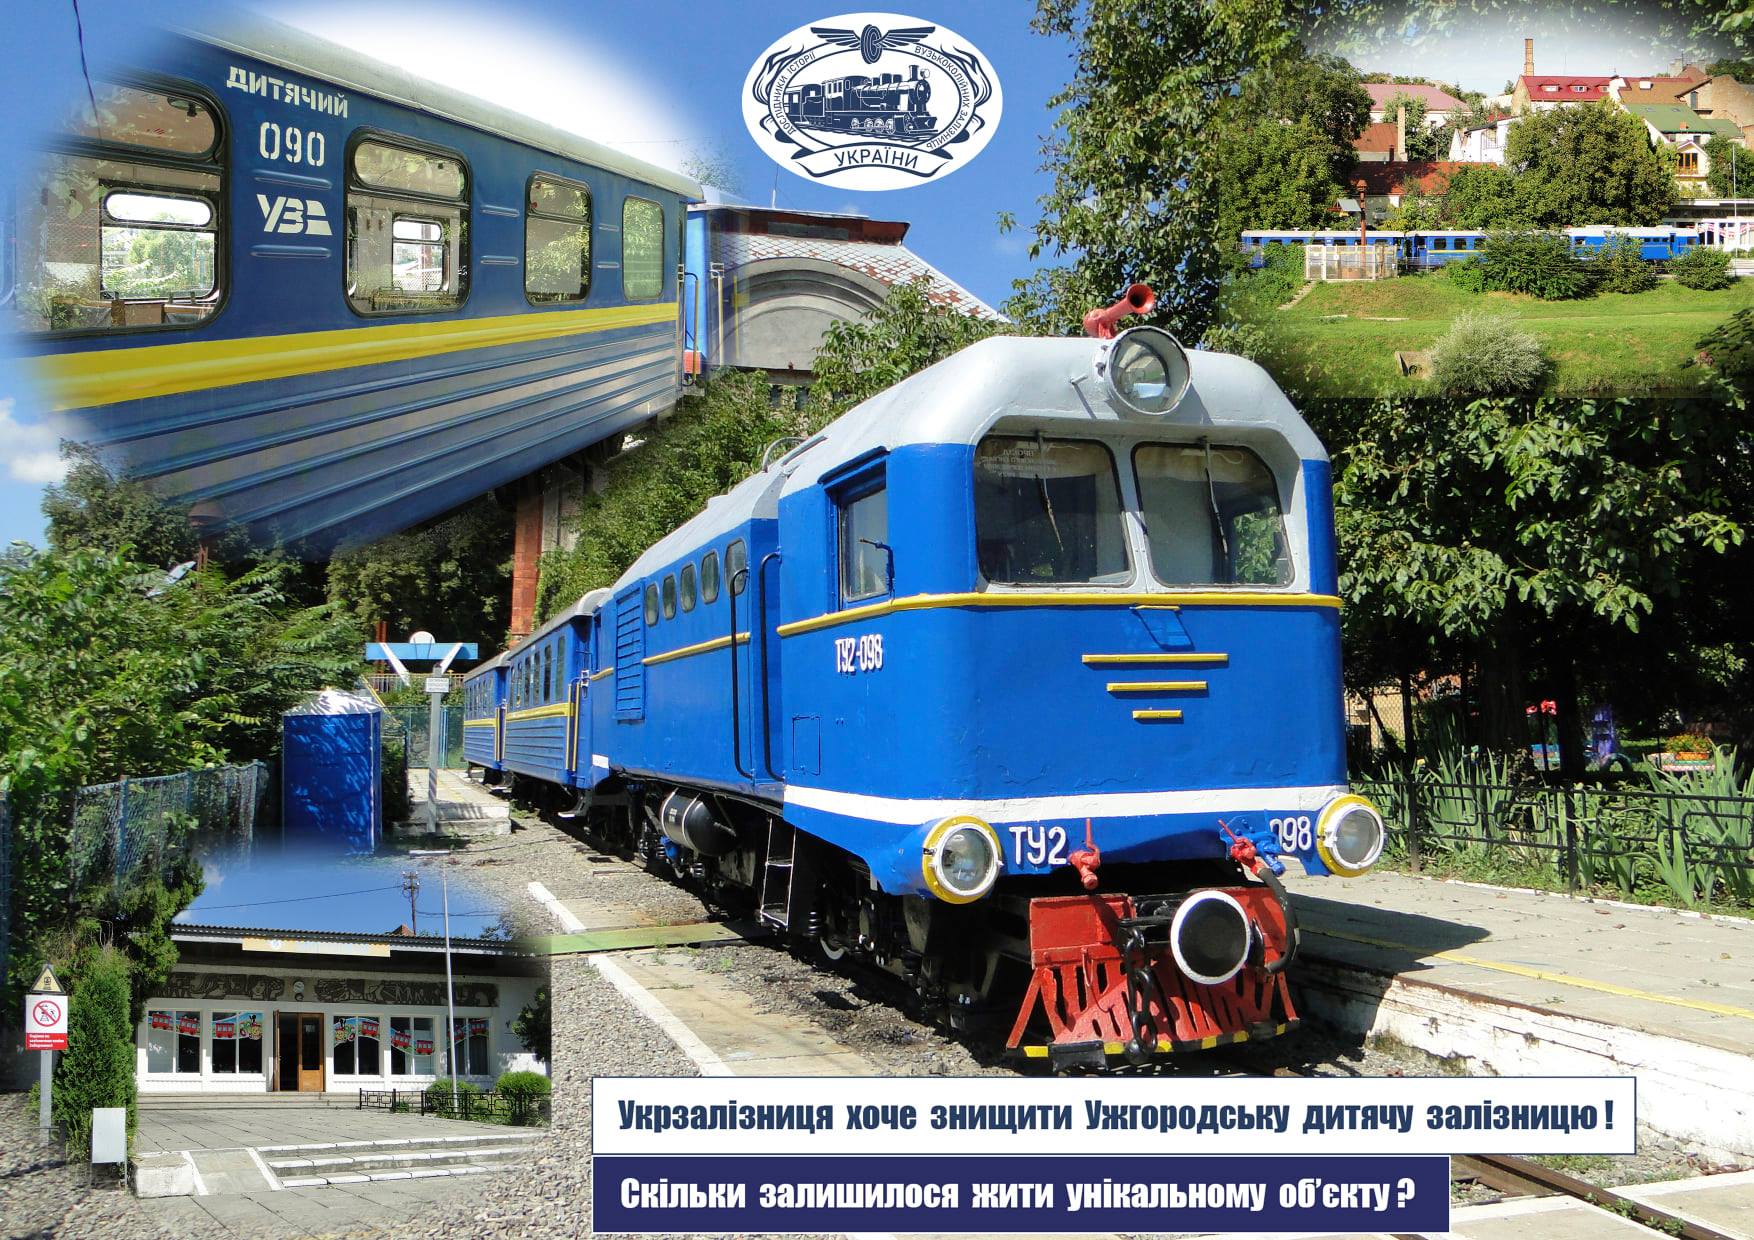 Два месяца назад региональное отделение «Львовской железной дороги» приняло решение о закрытии двух детских магистралей – Ужгорода и Луцка.